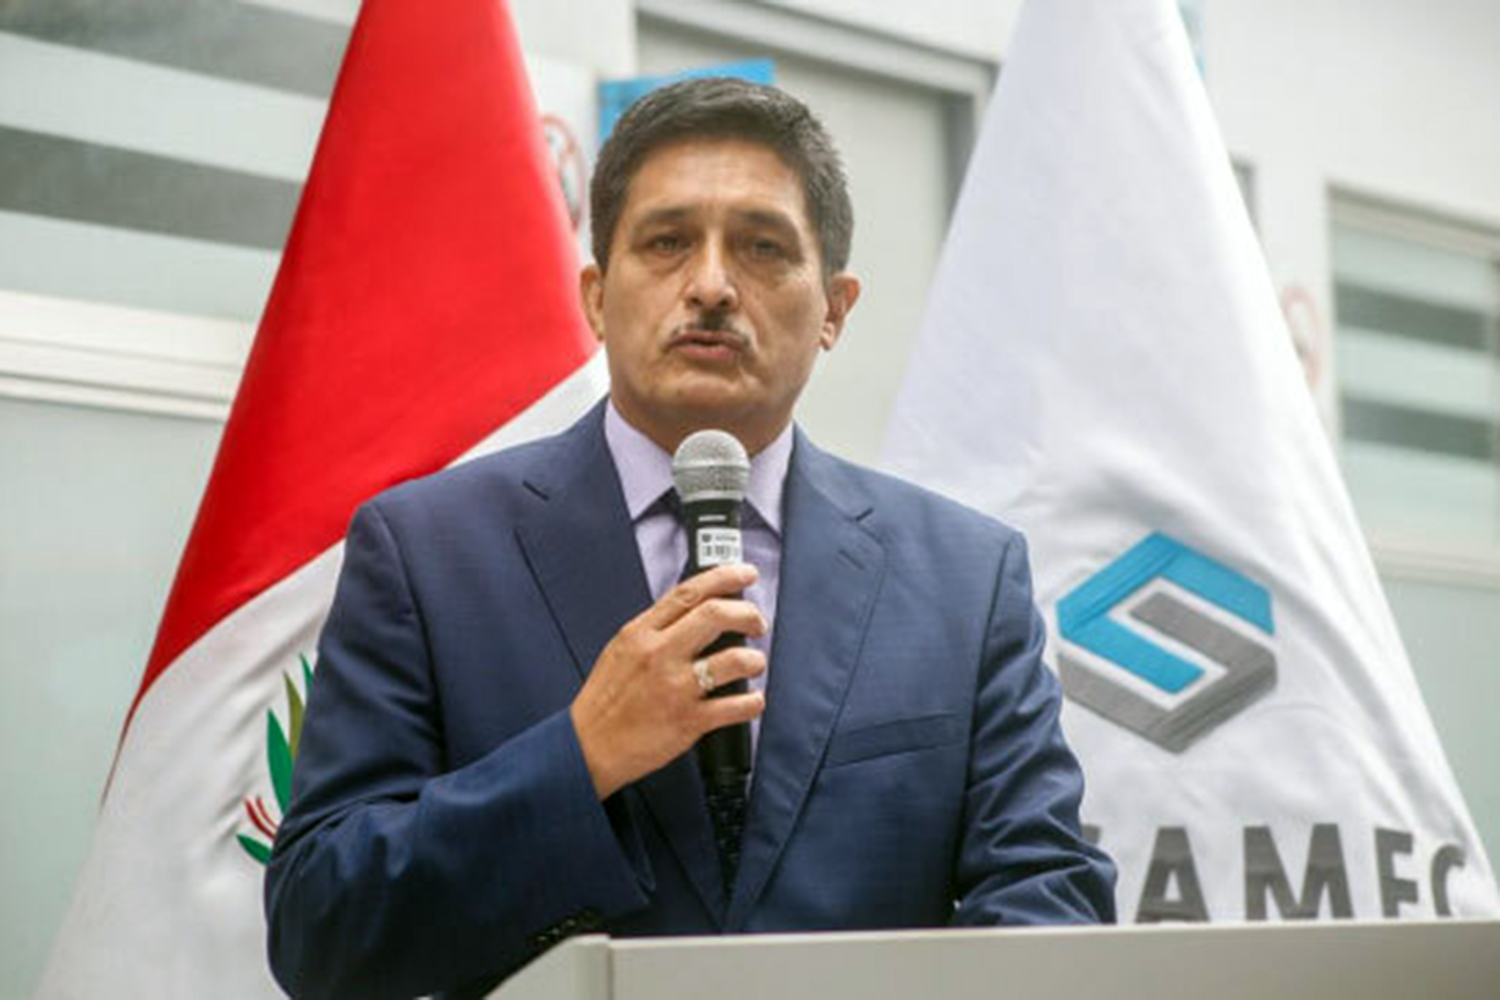 El general Mario Fernando Arata Bustamante superintendente nacional de seguridad privada del Perú